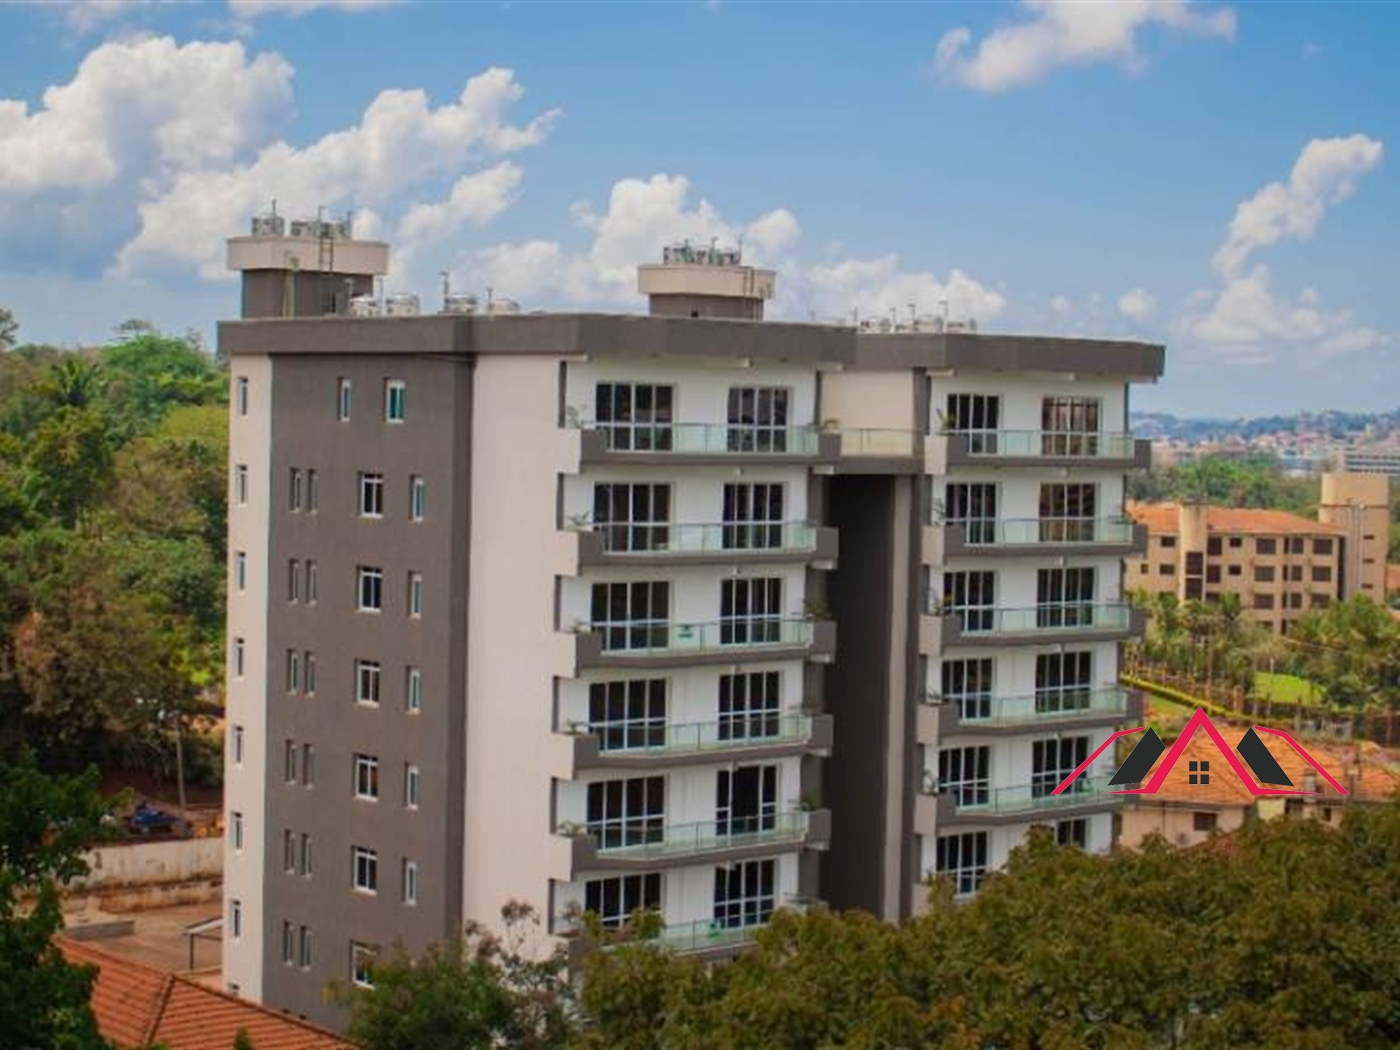 3 Bedroom Apartment For Rent In Naguru Kampala Uganda Code 09 22